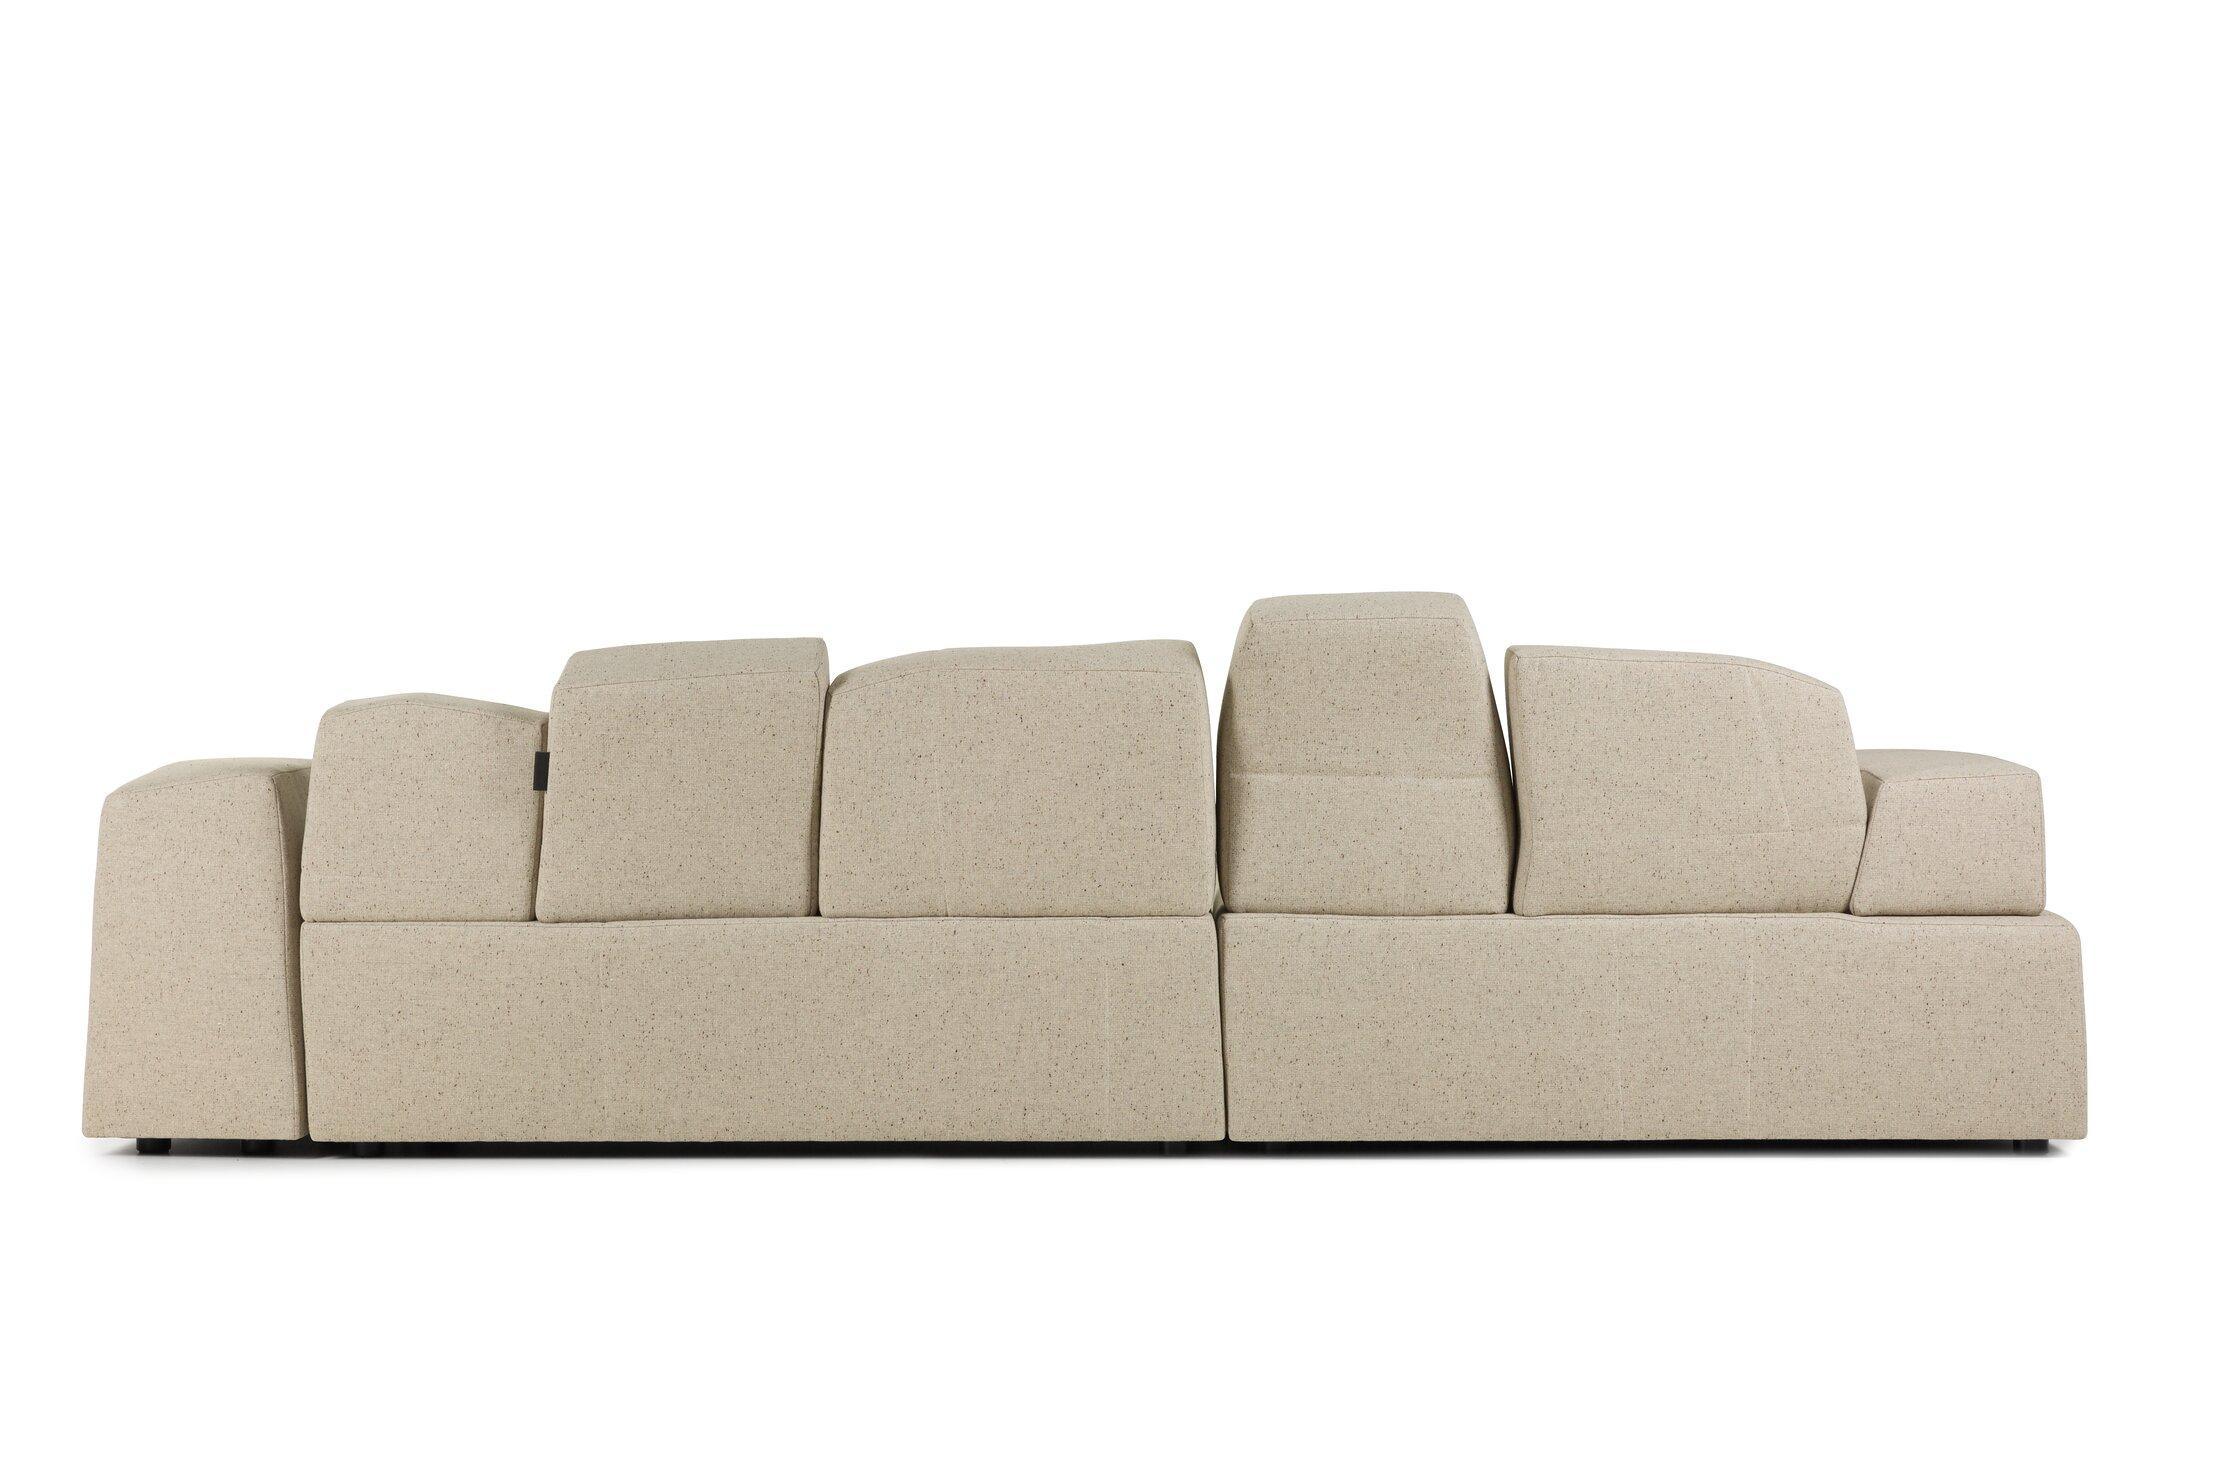 So etwas wie dieses Sofa zeugt von der Vorliebe des Designers für skizzenhafte Zeichnungen, die in ein weiches, ungewöhnlich modelliertes Sofa umgesetzt wurden.

Zusätzliche Informationen:
Material: Holz- und Stahlrahmenkonstruktion,